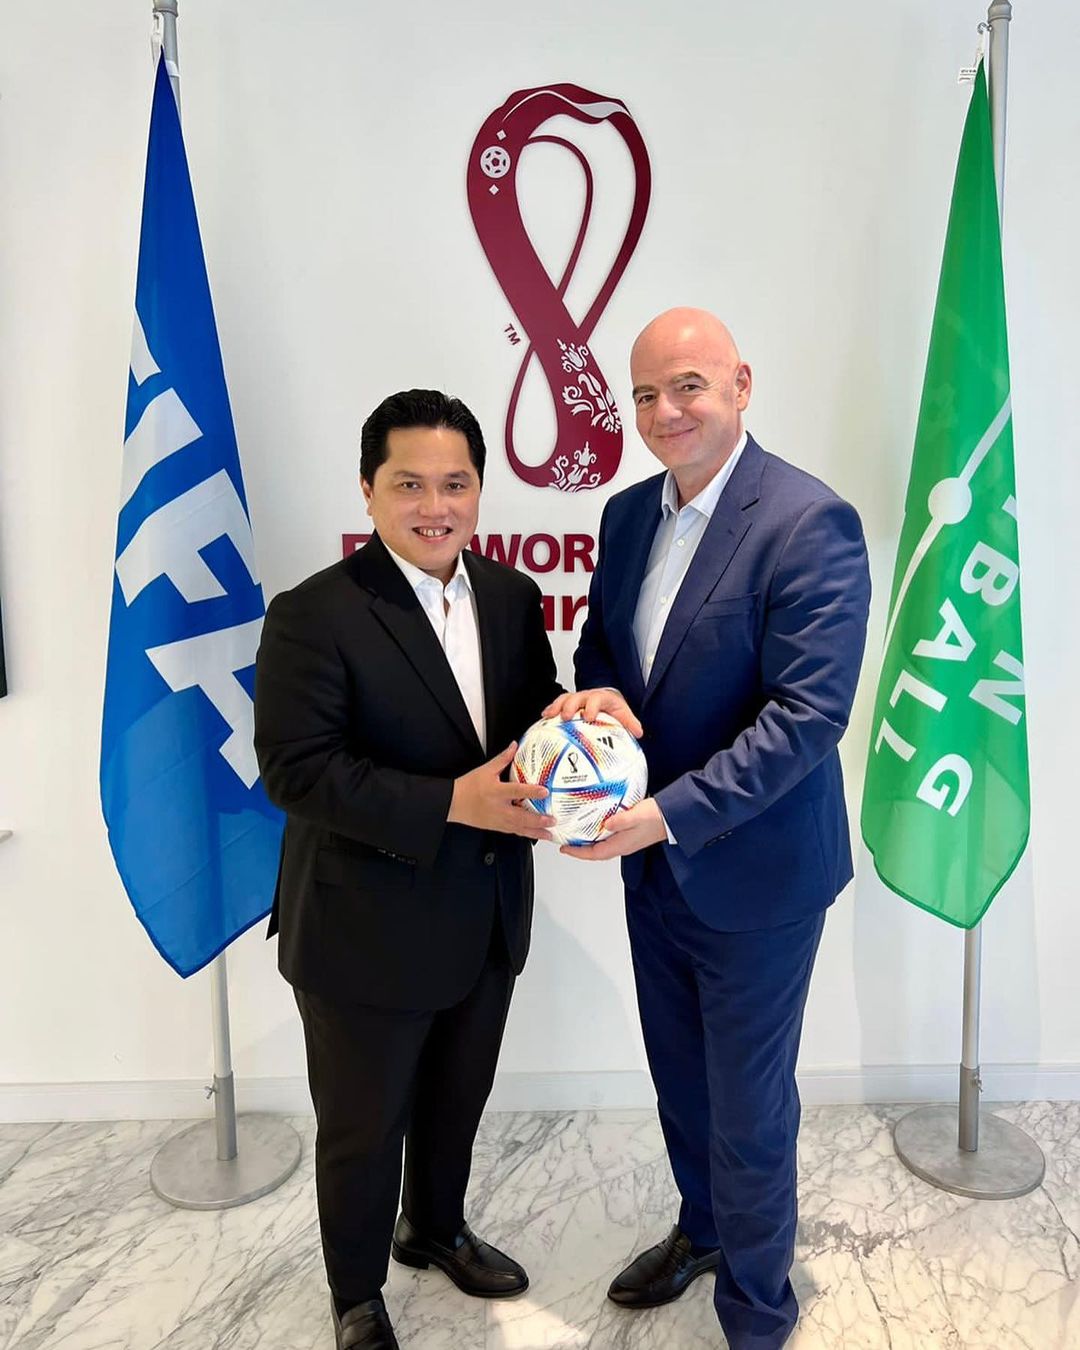 Bertemu Presiden FIFA, Erick Thohir: Kami Bahas Sepakbola Indonesia